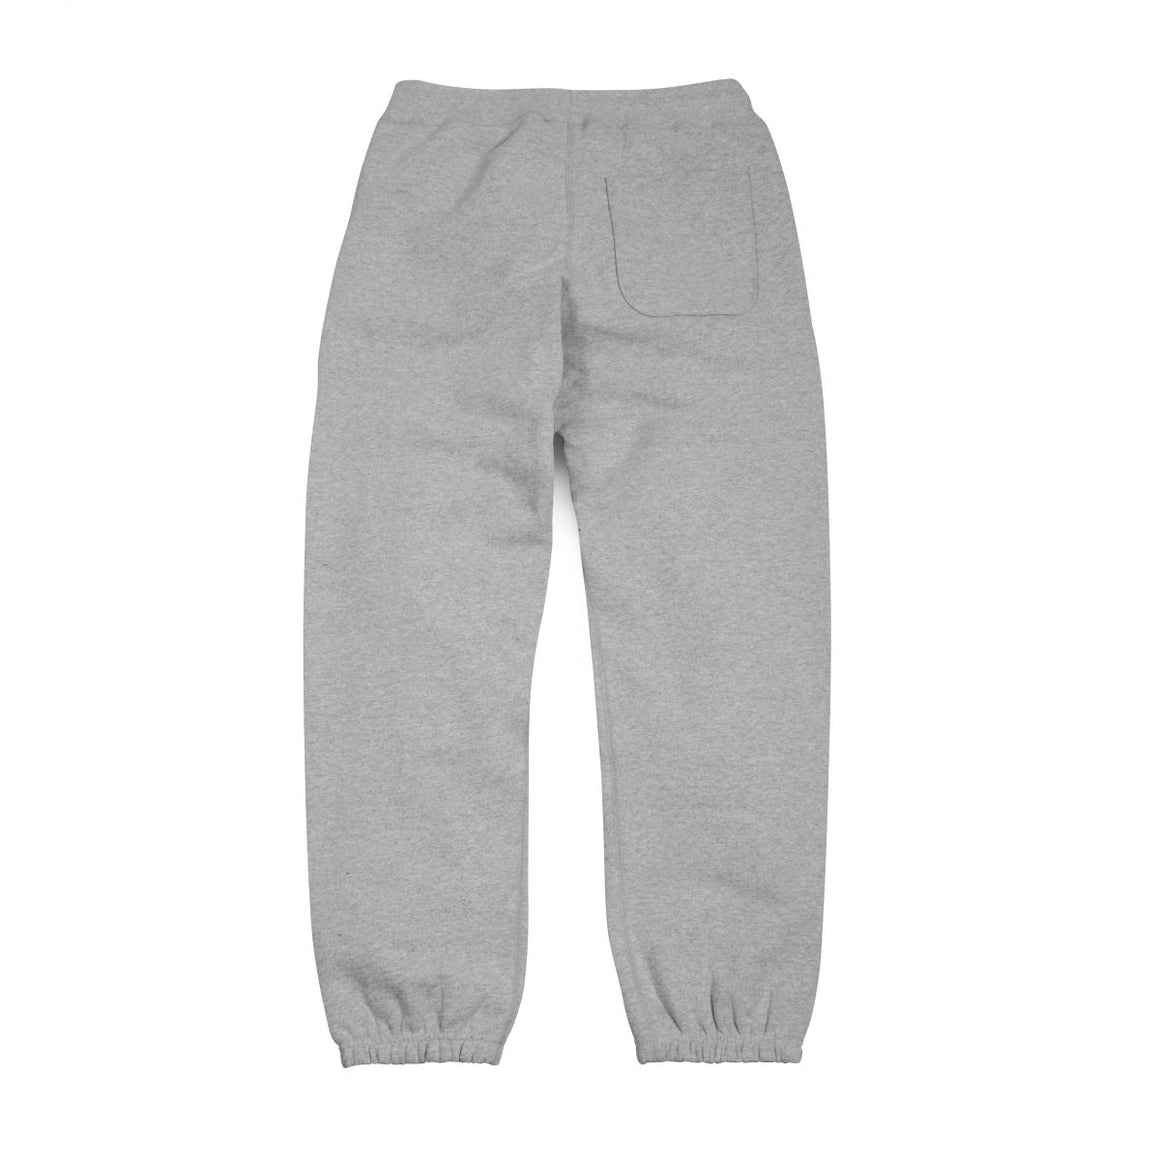 Classic Gray Sweatpants